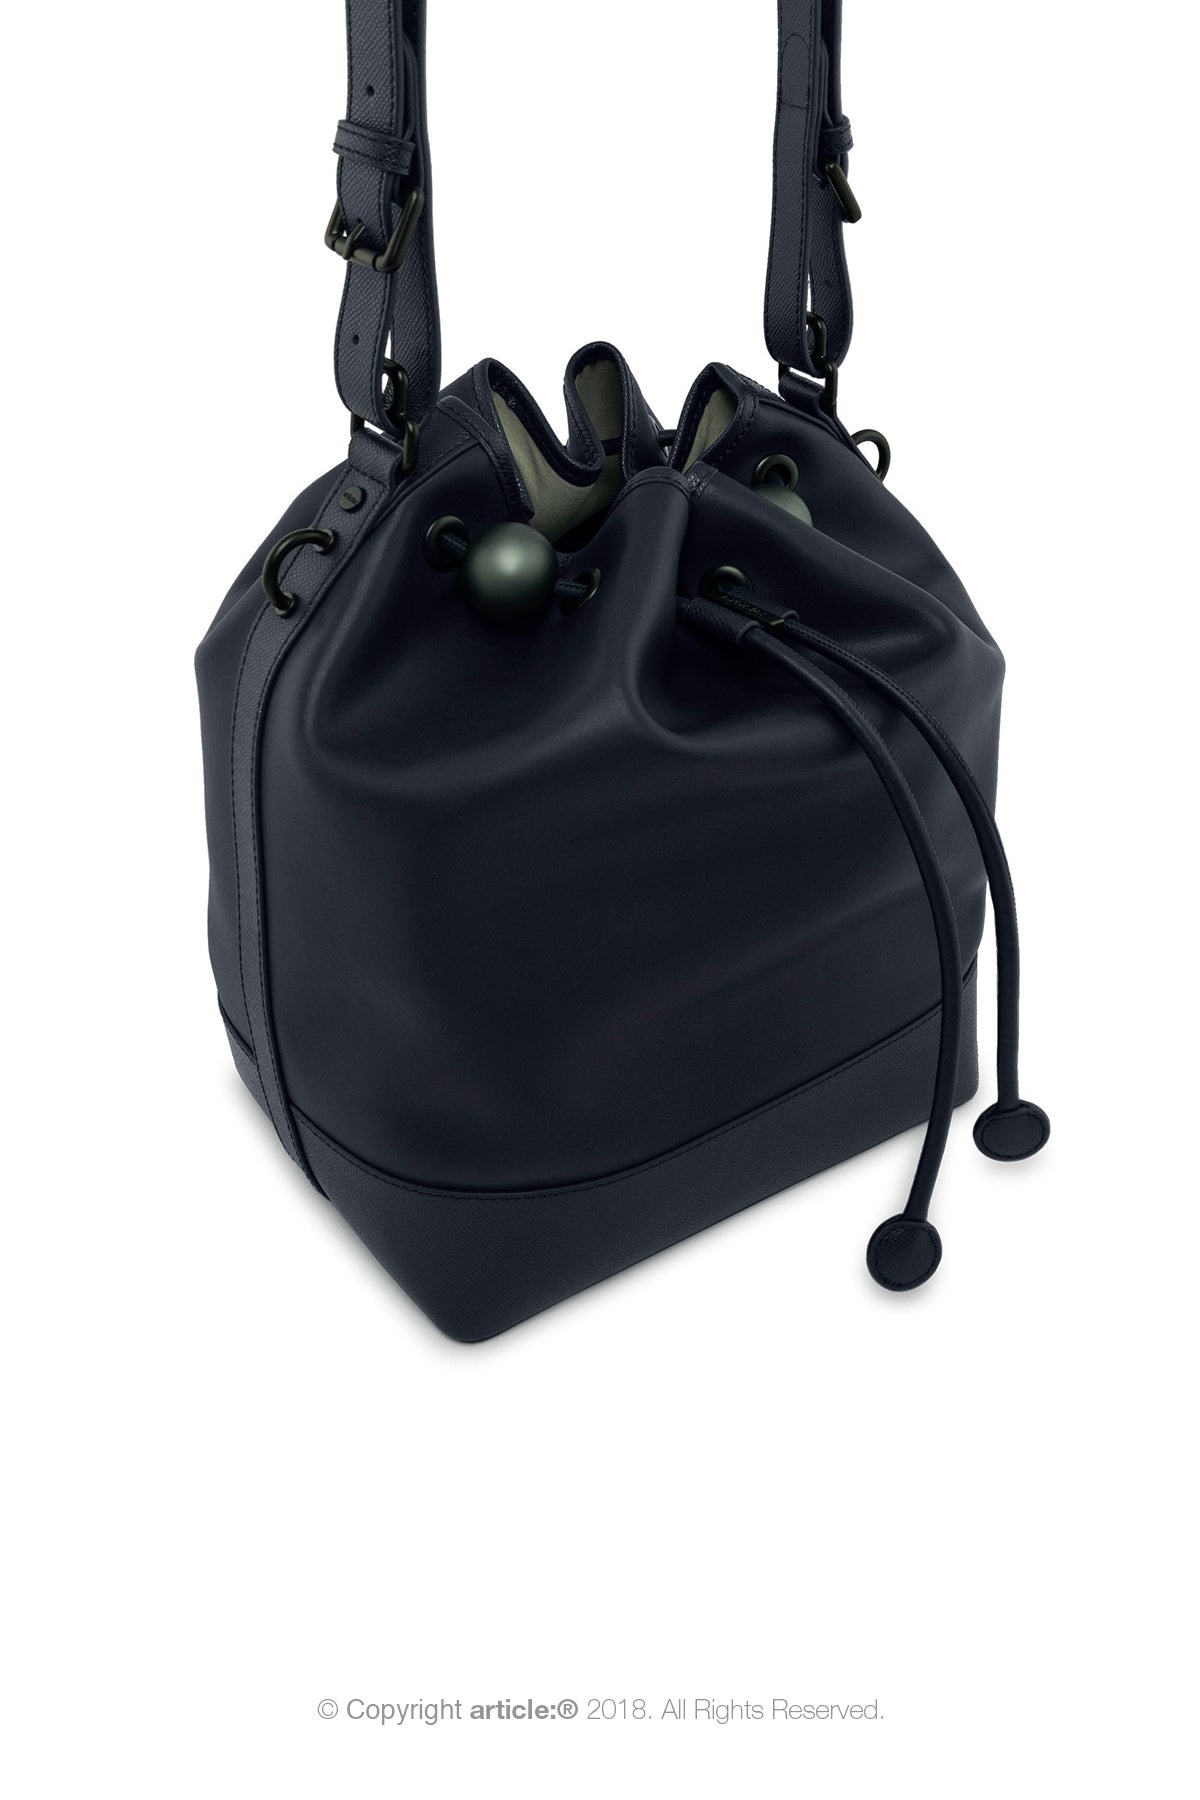 article: #120 Handbag Grande Bucket - Indigo